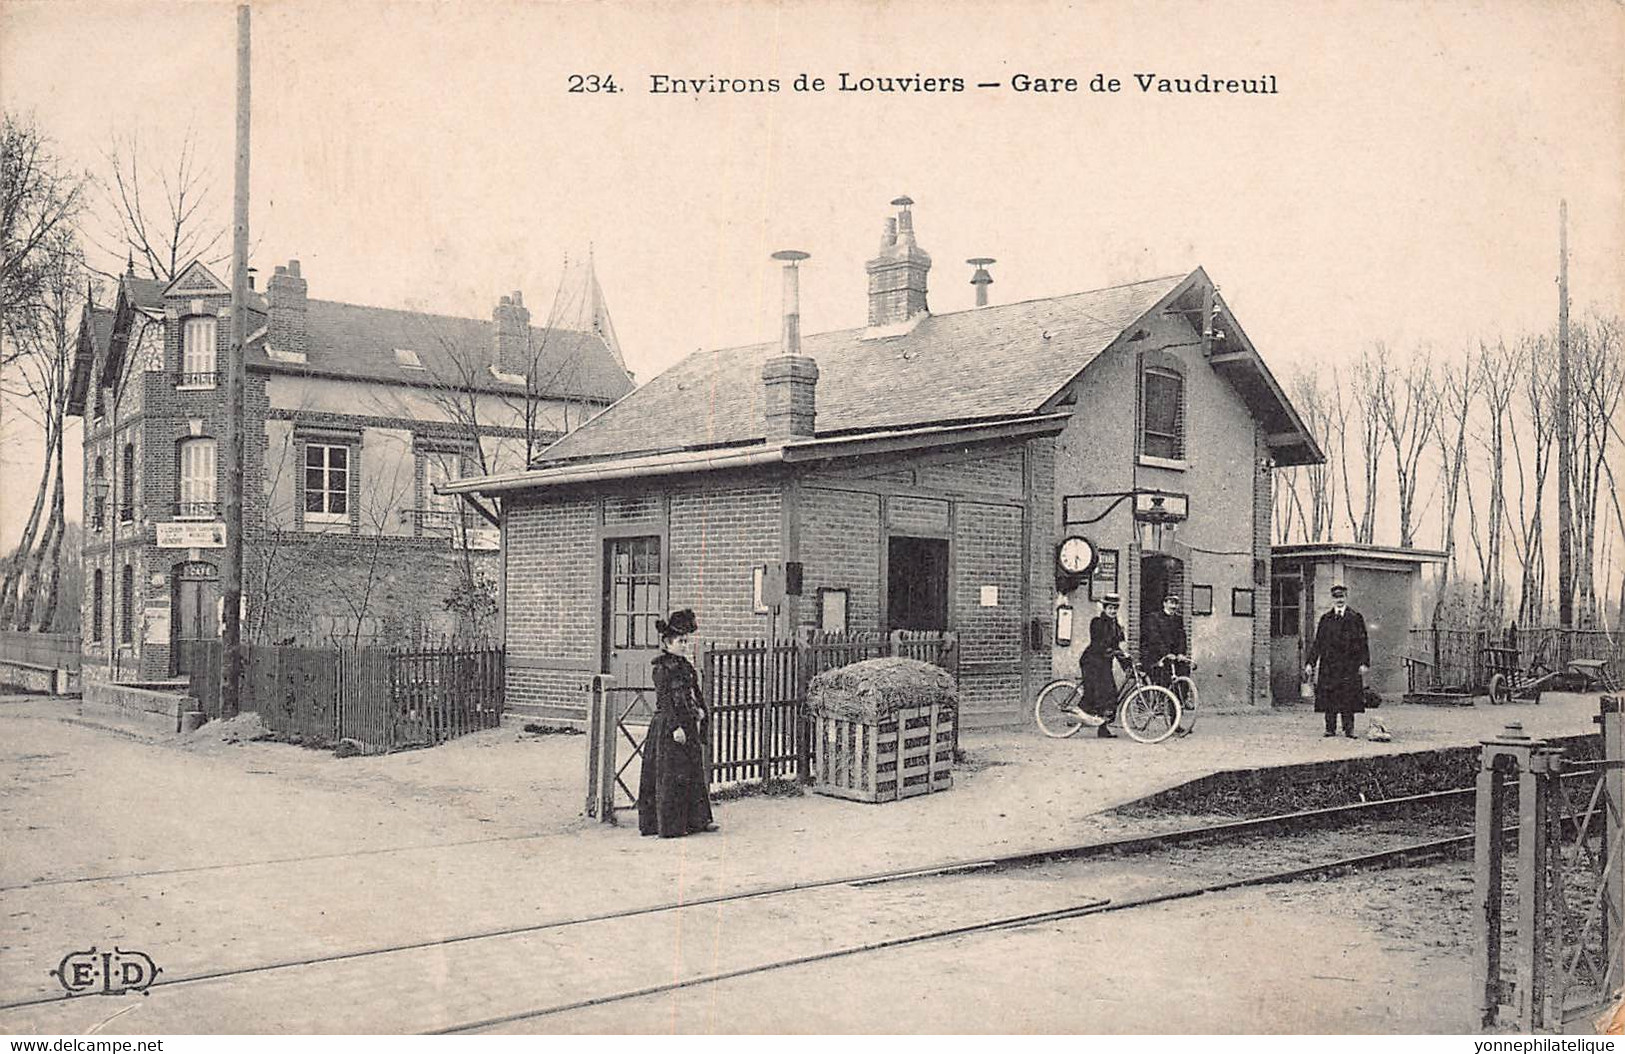 27 - EURE - LE VAUDREUIL - 10628 - Environ De Louviers - Gare - Le Vaudreuil